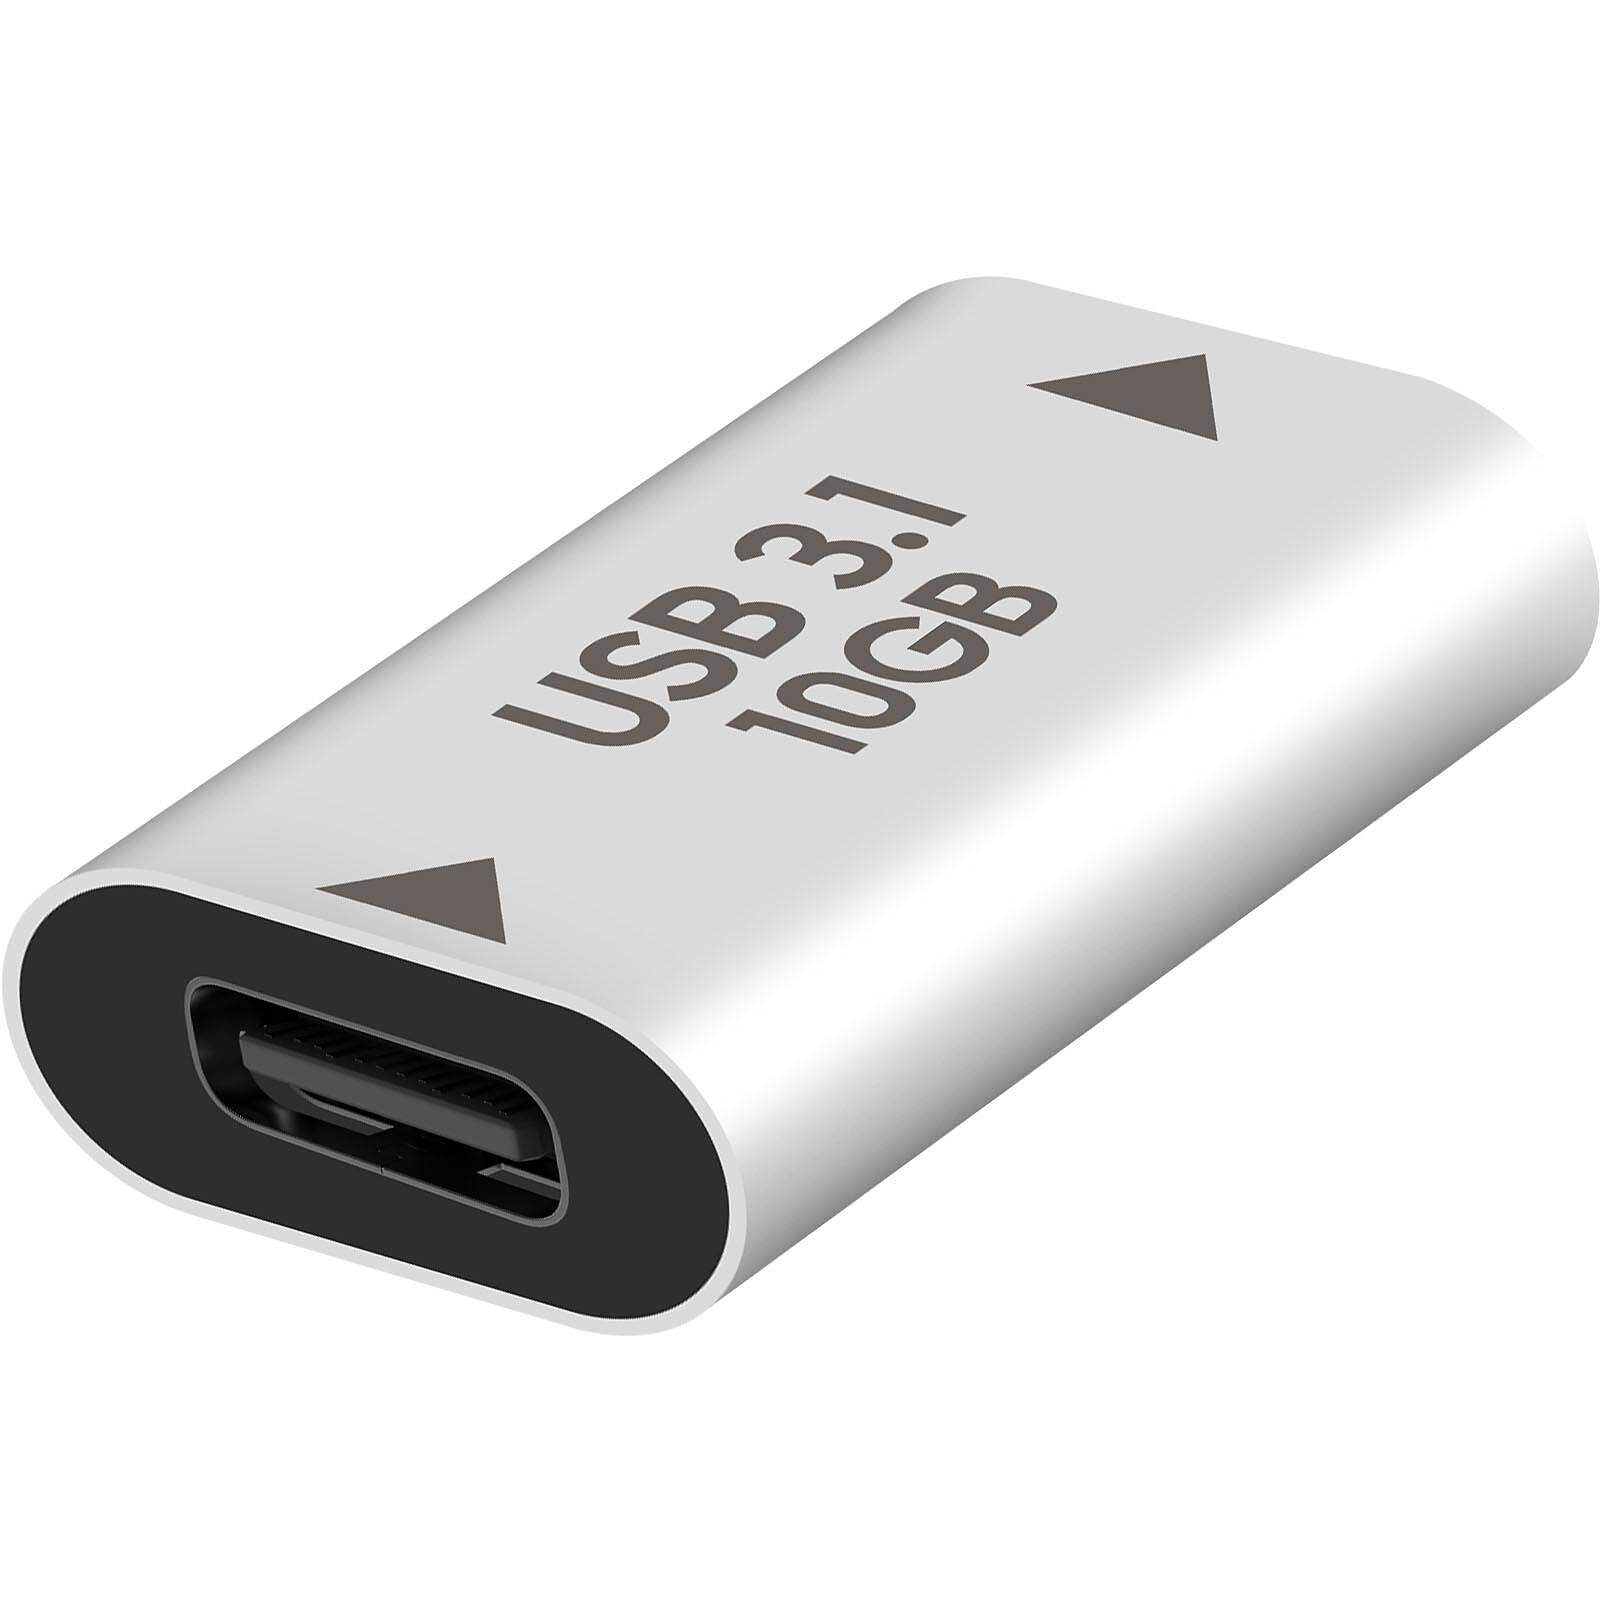 Câble de rallonge USB 3.1 type c mâle à femelle connecteur argenté 2 M